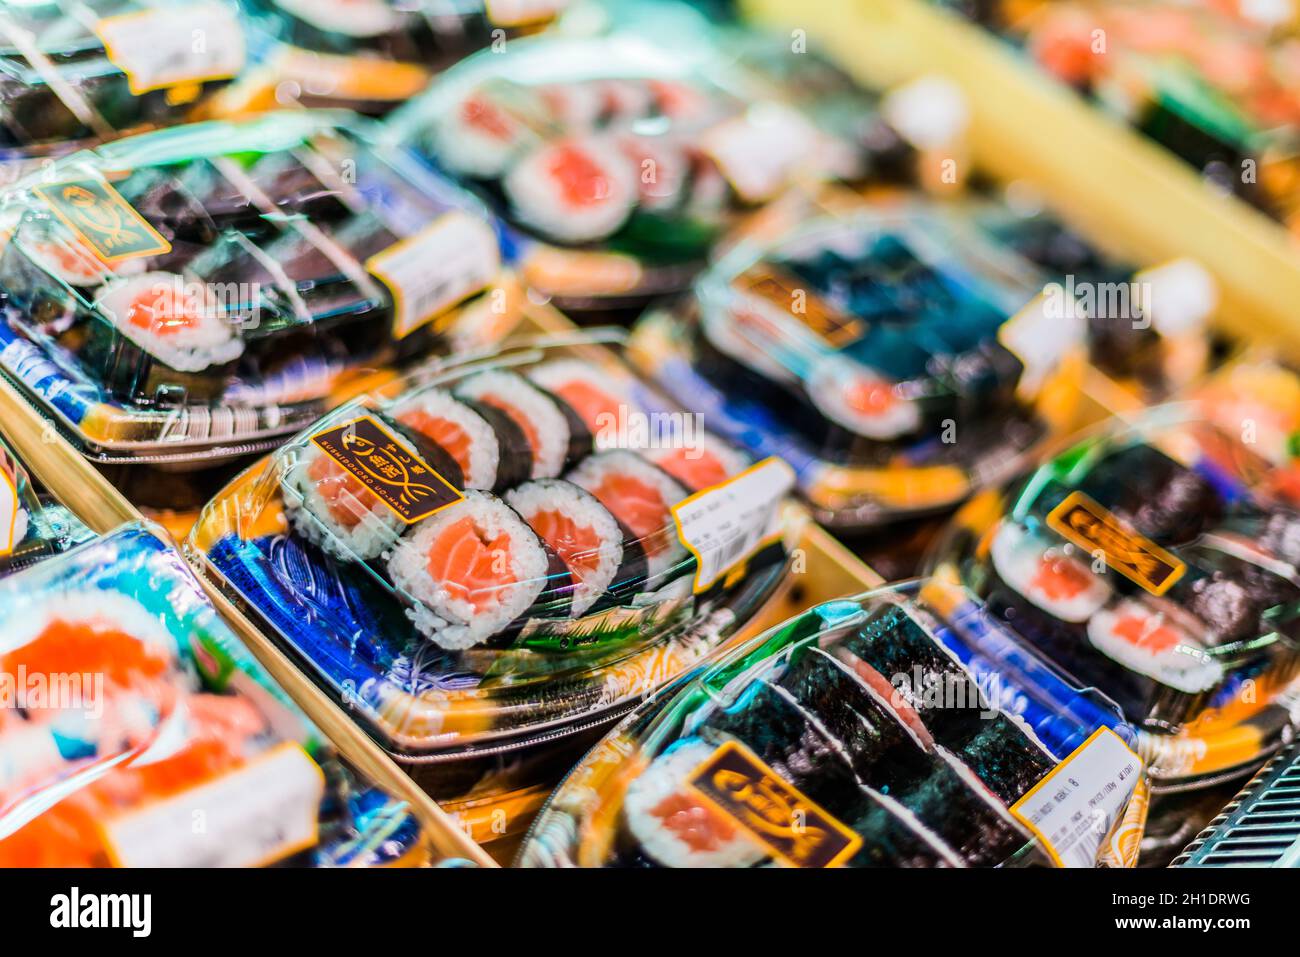 SINGAPUR - 3. MÄRZ 2020: Fertig verpacktes, verzehrfertiges Sushi, das in  einem handelsüblichen Kühlschrank zum Verkauf steht Stockfotografie - Alamy